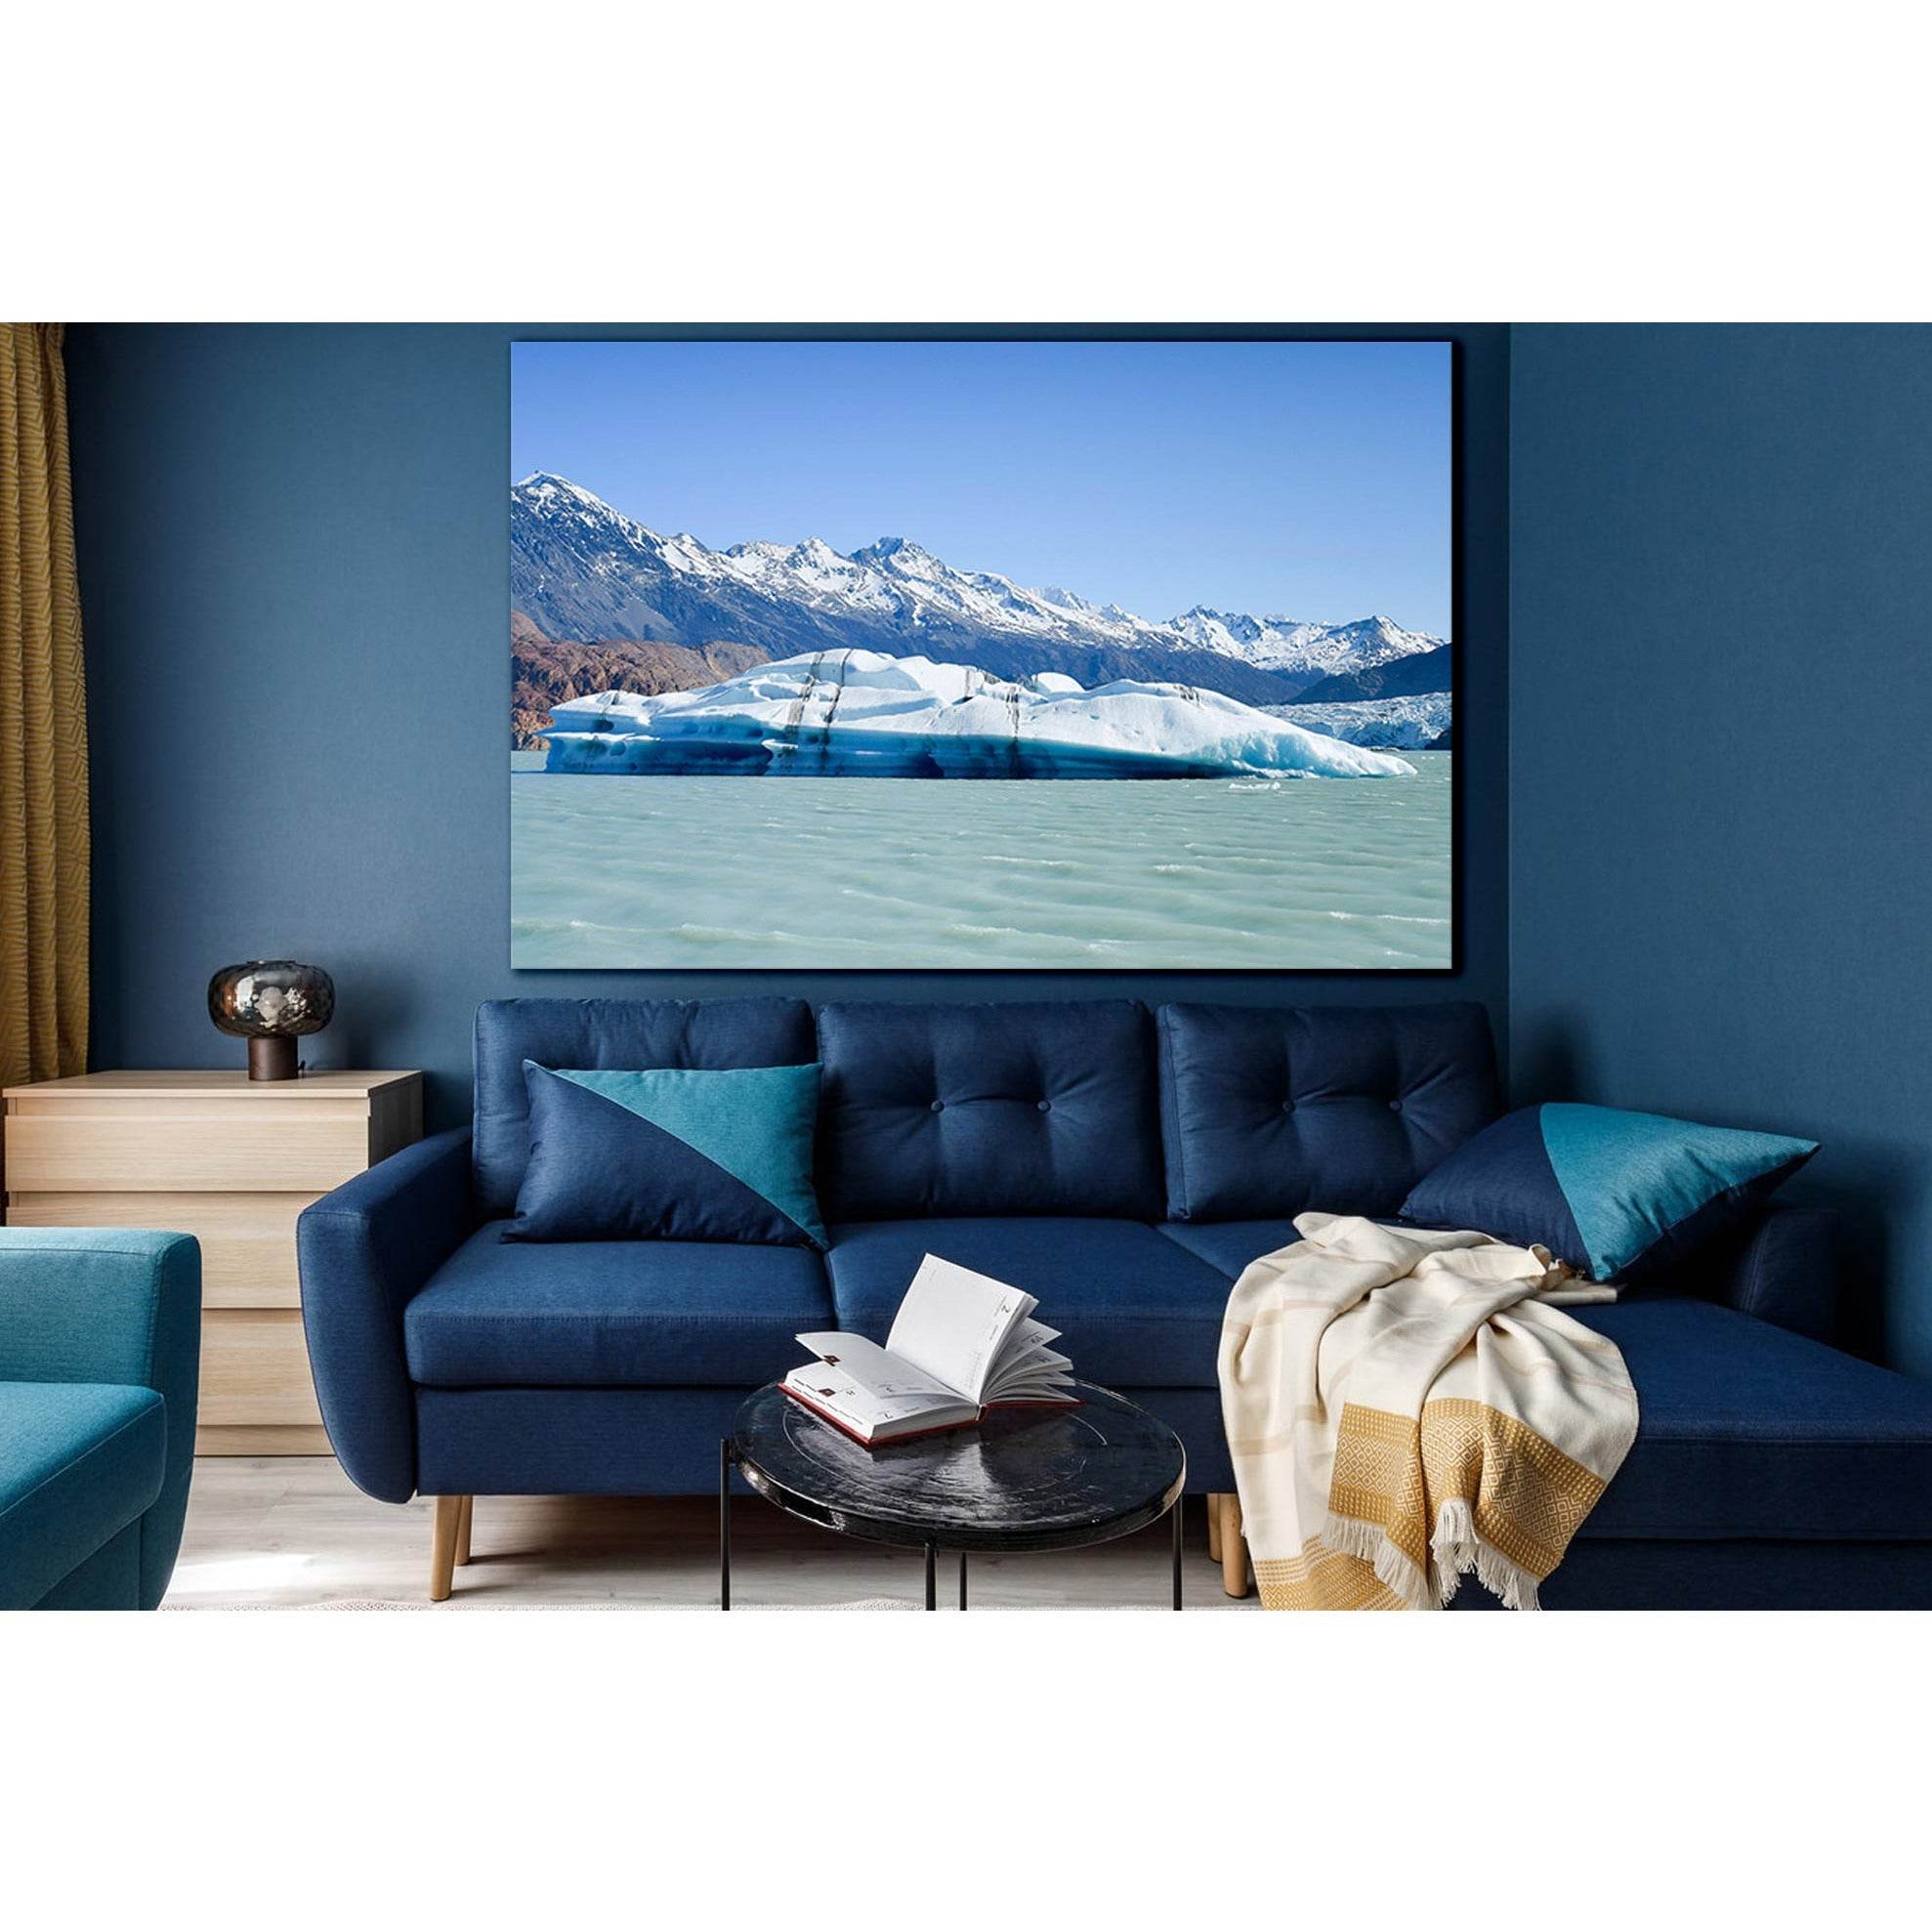 Viedma Glacier And The Lake №SL1330 Ready to Hang Canvas Print